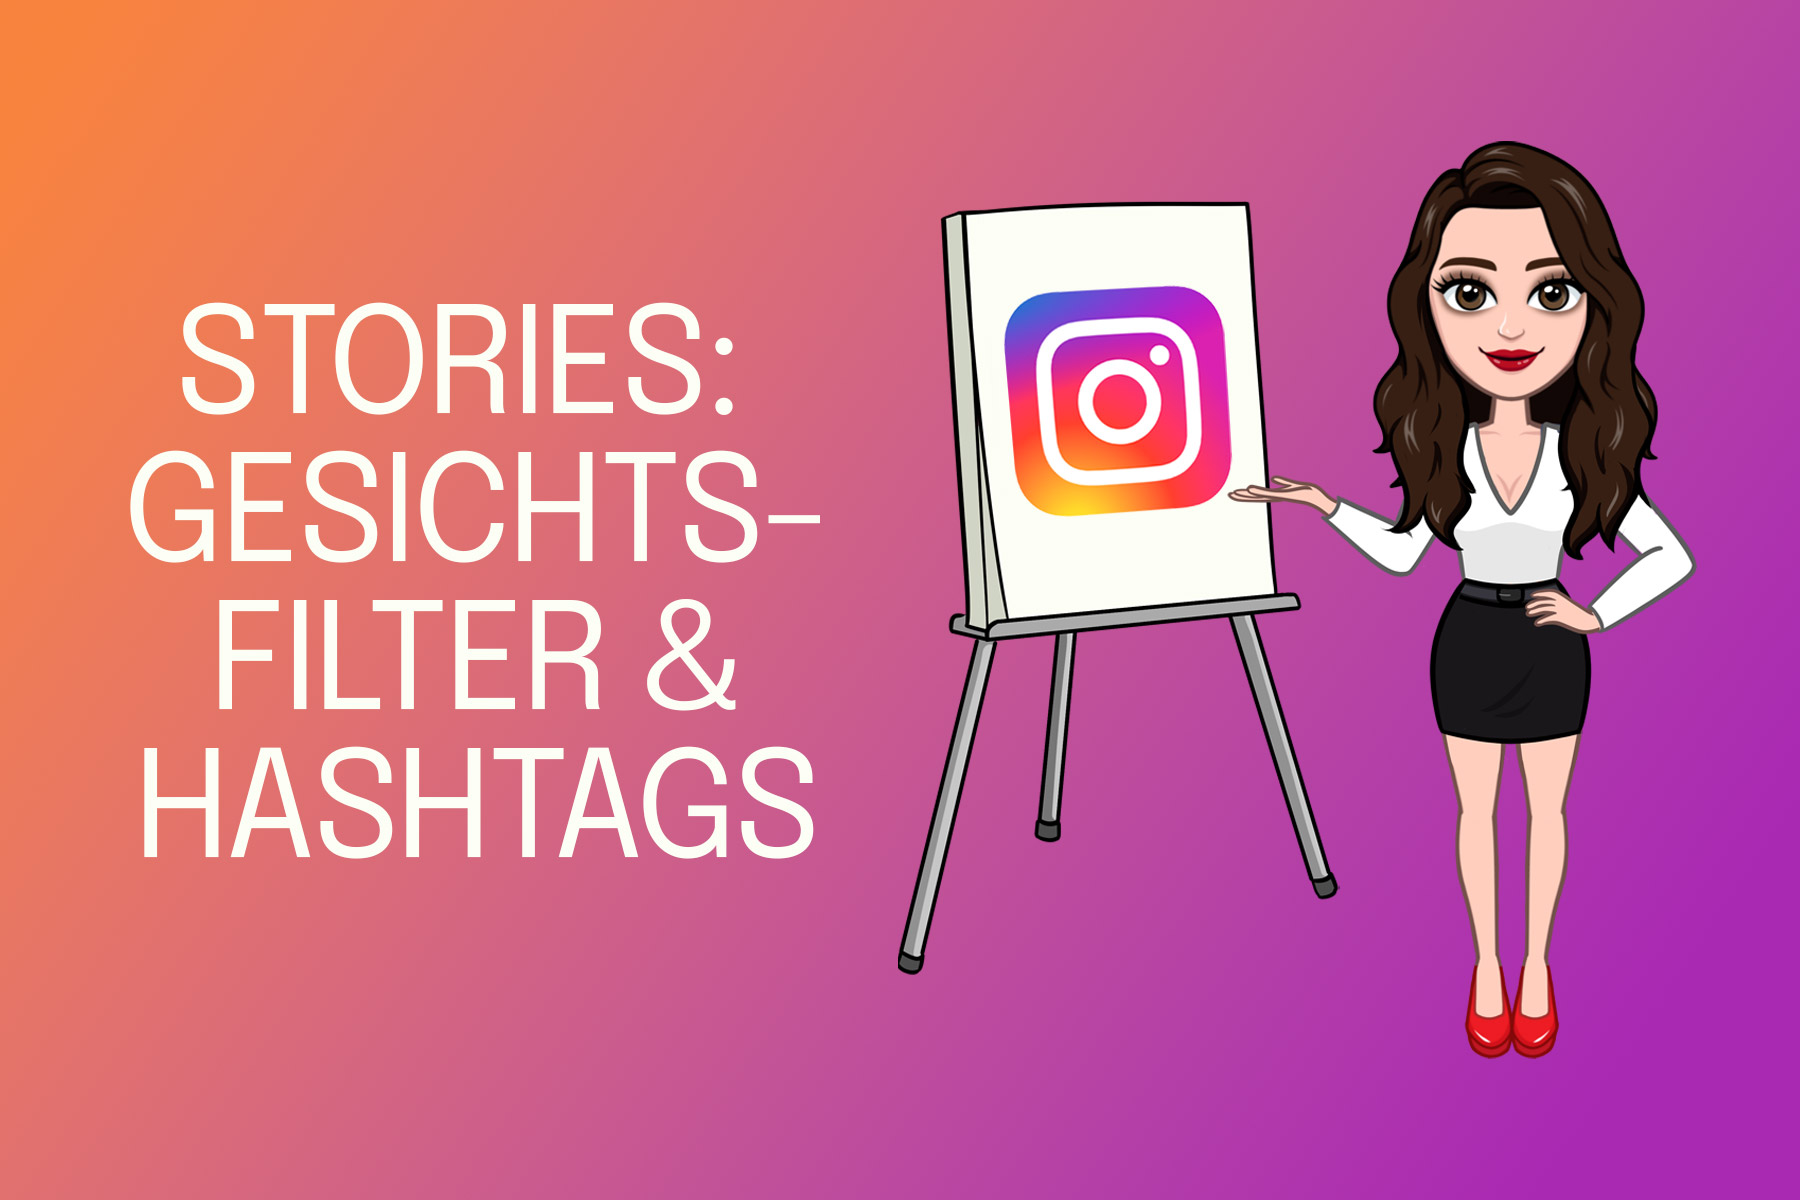 Instagram Stories - Gesichtsfilter & Hashtags - Anleitung und Erklärung zur Anwendung